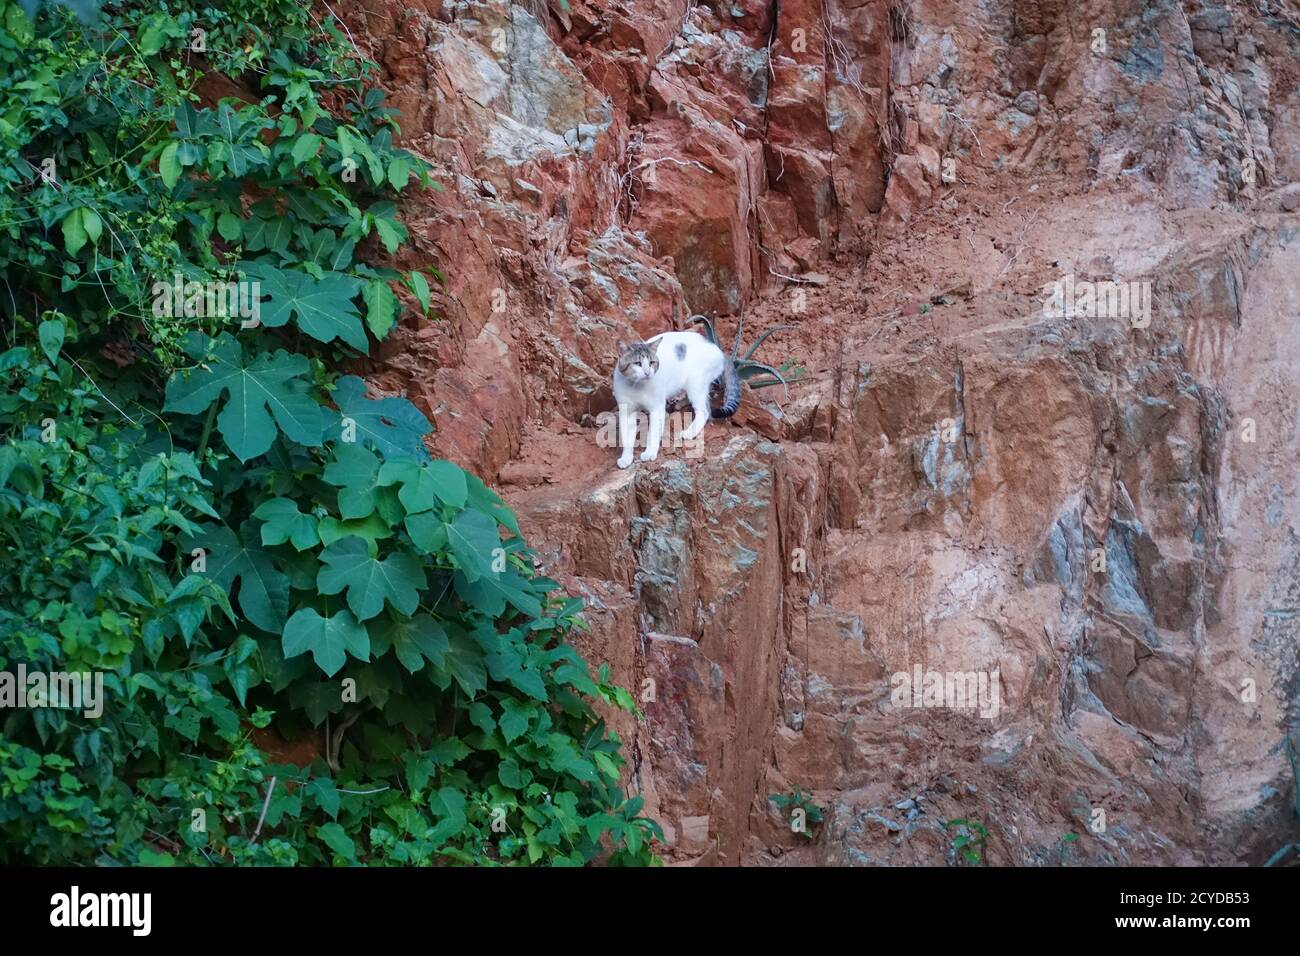 Le grand chat mâle blanc escalade des murs de montagne escarpés Banque D'Images